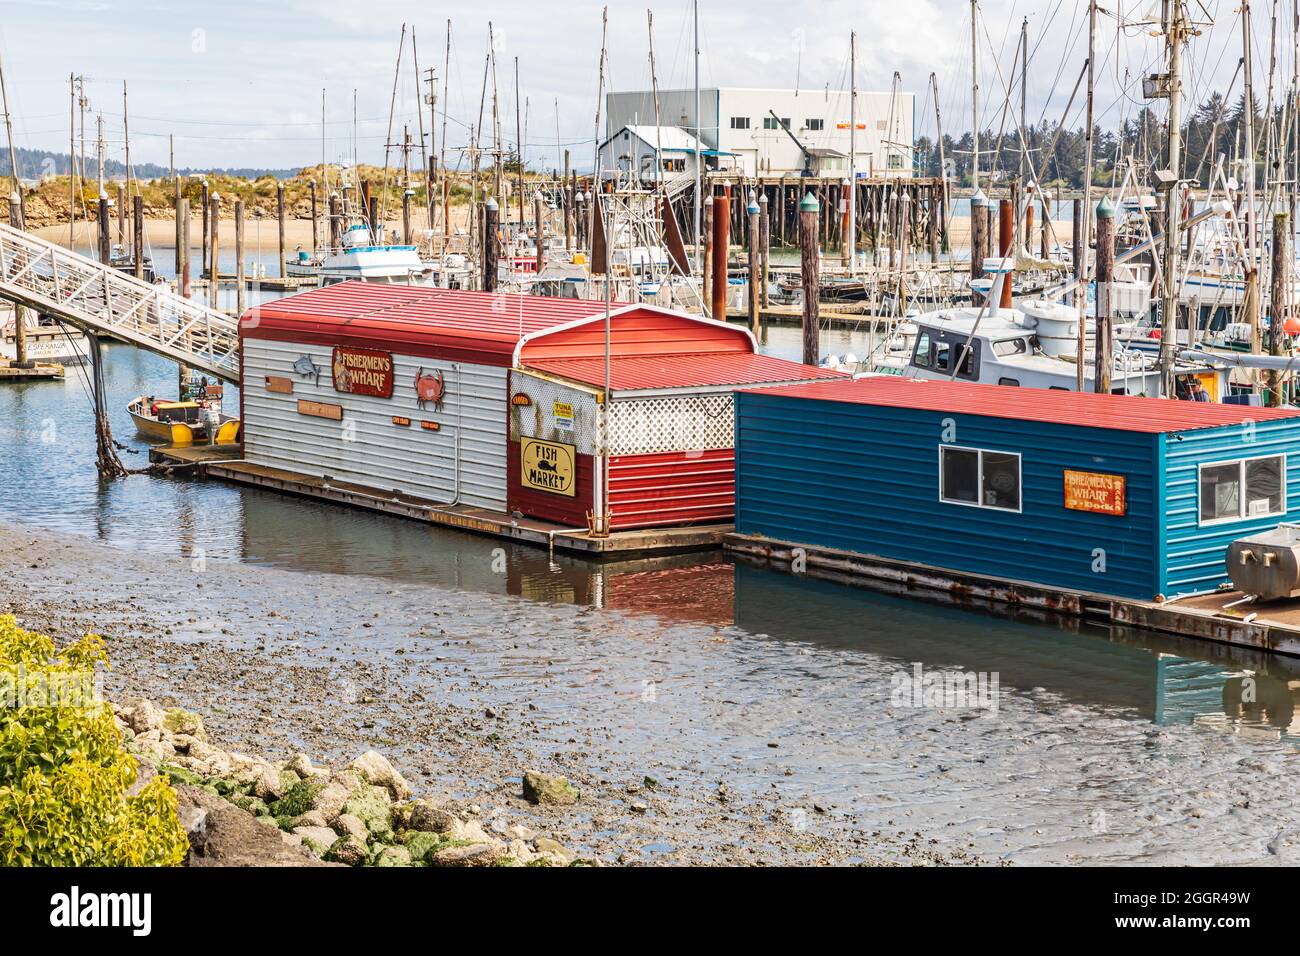 Coos Bay, Oregon, USA. May 2, 2021. Fisherman's Wharf in Coos Bay, Oregon. Stock Photo